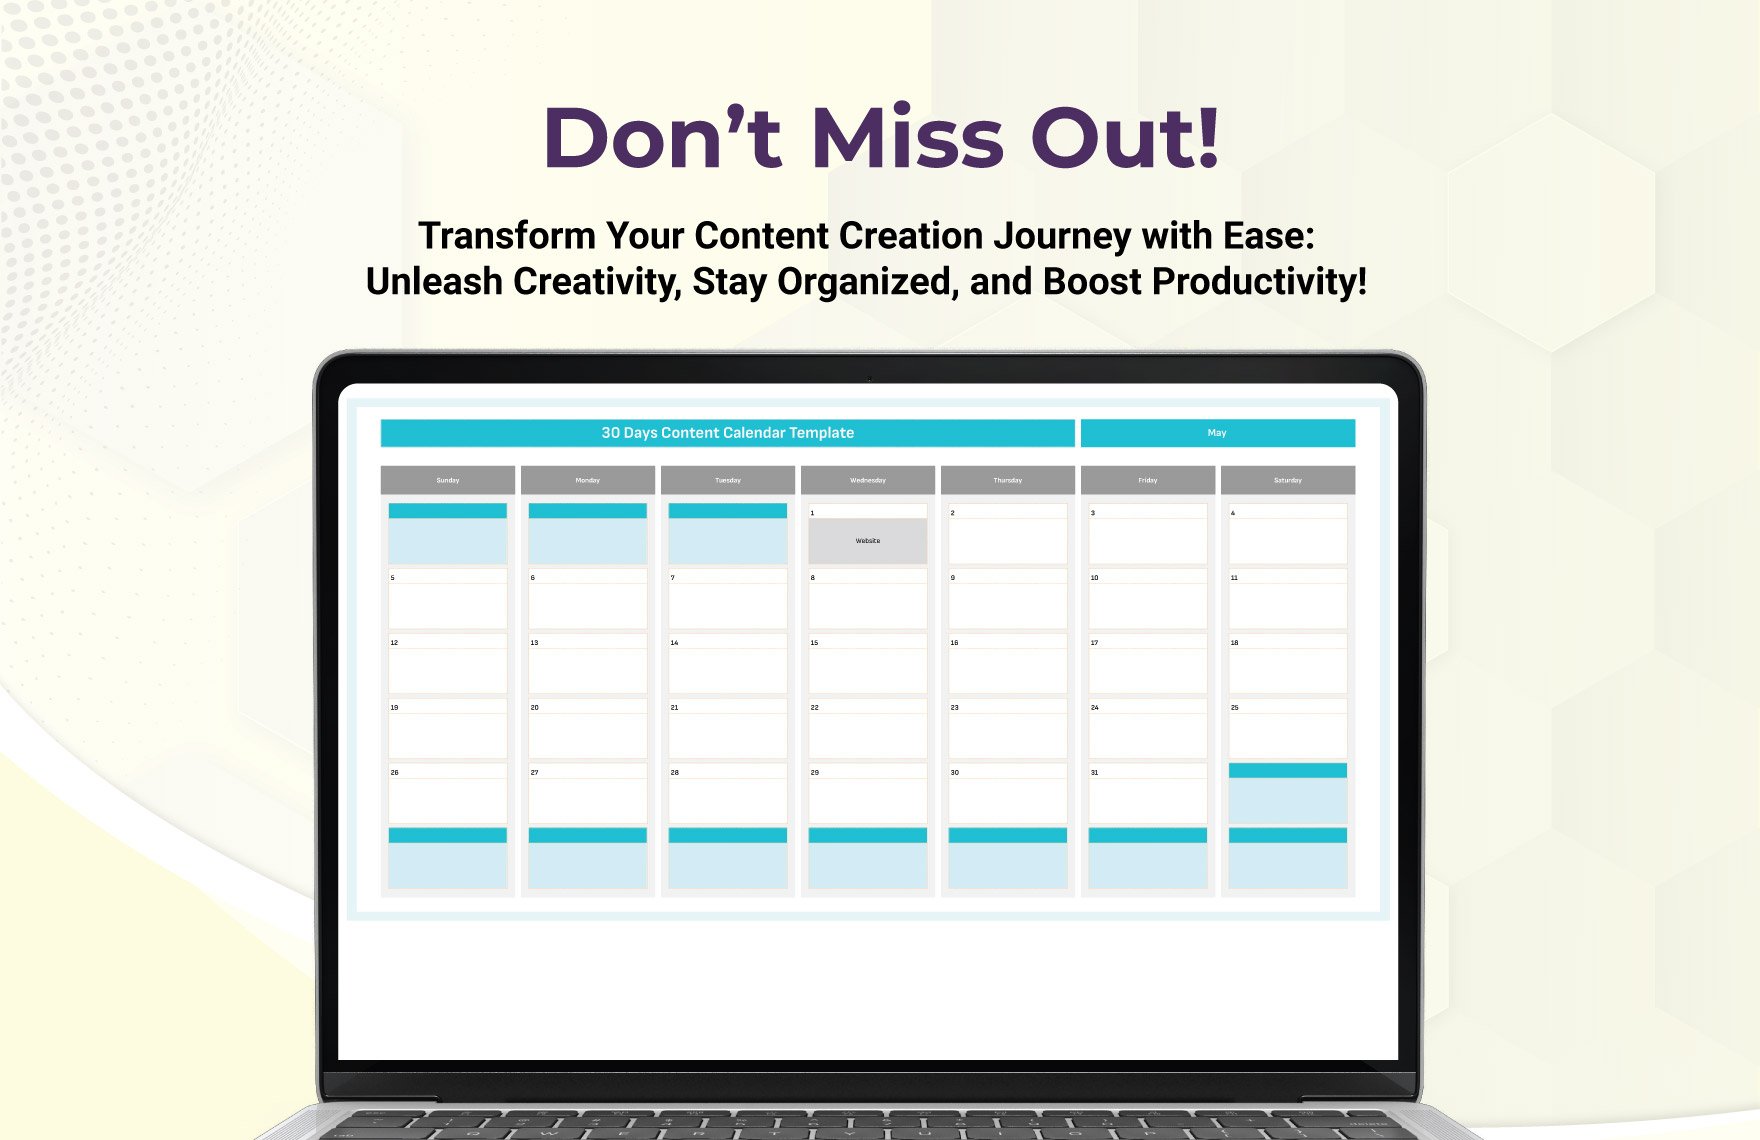 30 Days Content Calendar Template